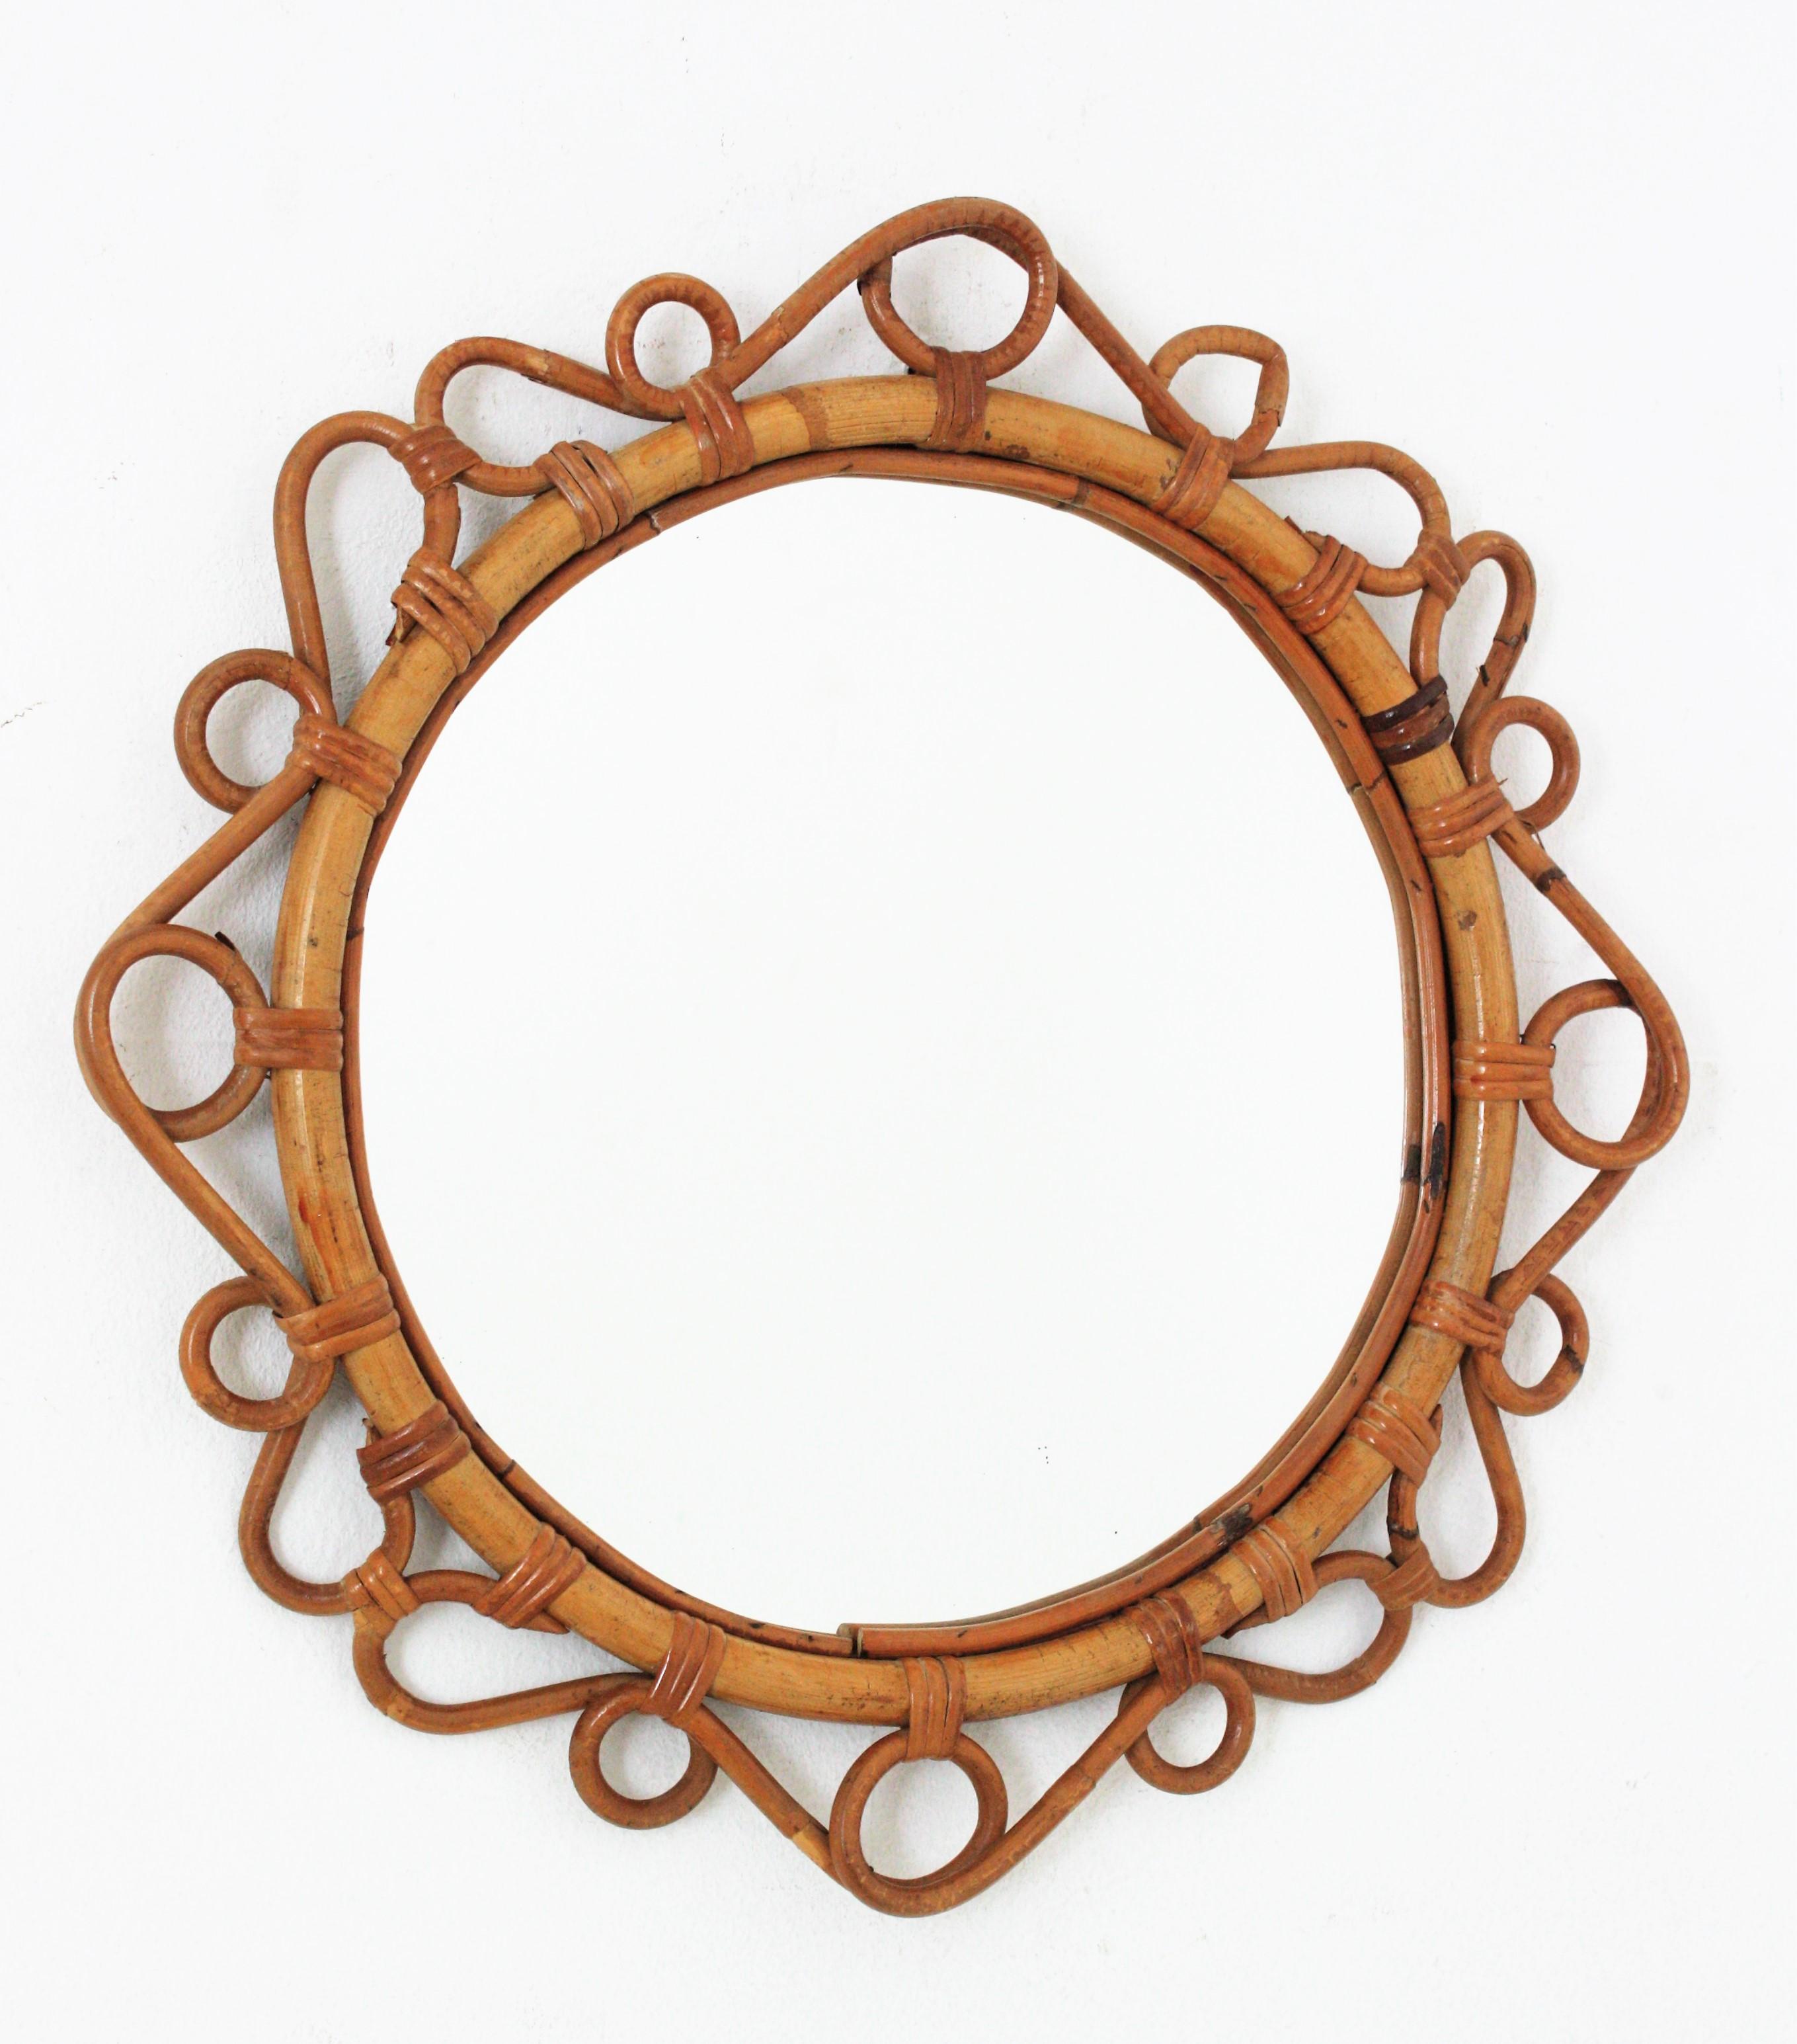 Miroir ovale en bambou et rotin, fabriqué à la main, avec des détails de volutes entourant le cadre. Espagne, vers les années 1960.
Ce miroir mural méditerranéen présente un cadre ovale en bambou entouré de rinceaux et de cercles en rotin.
Il